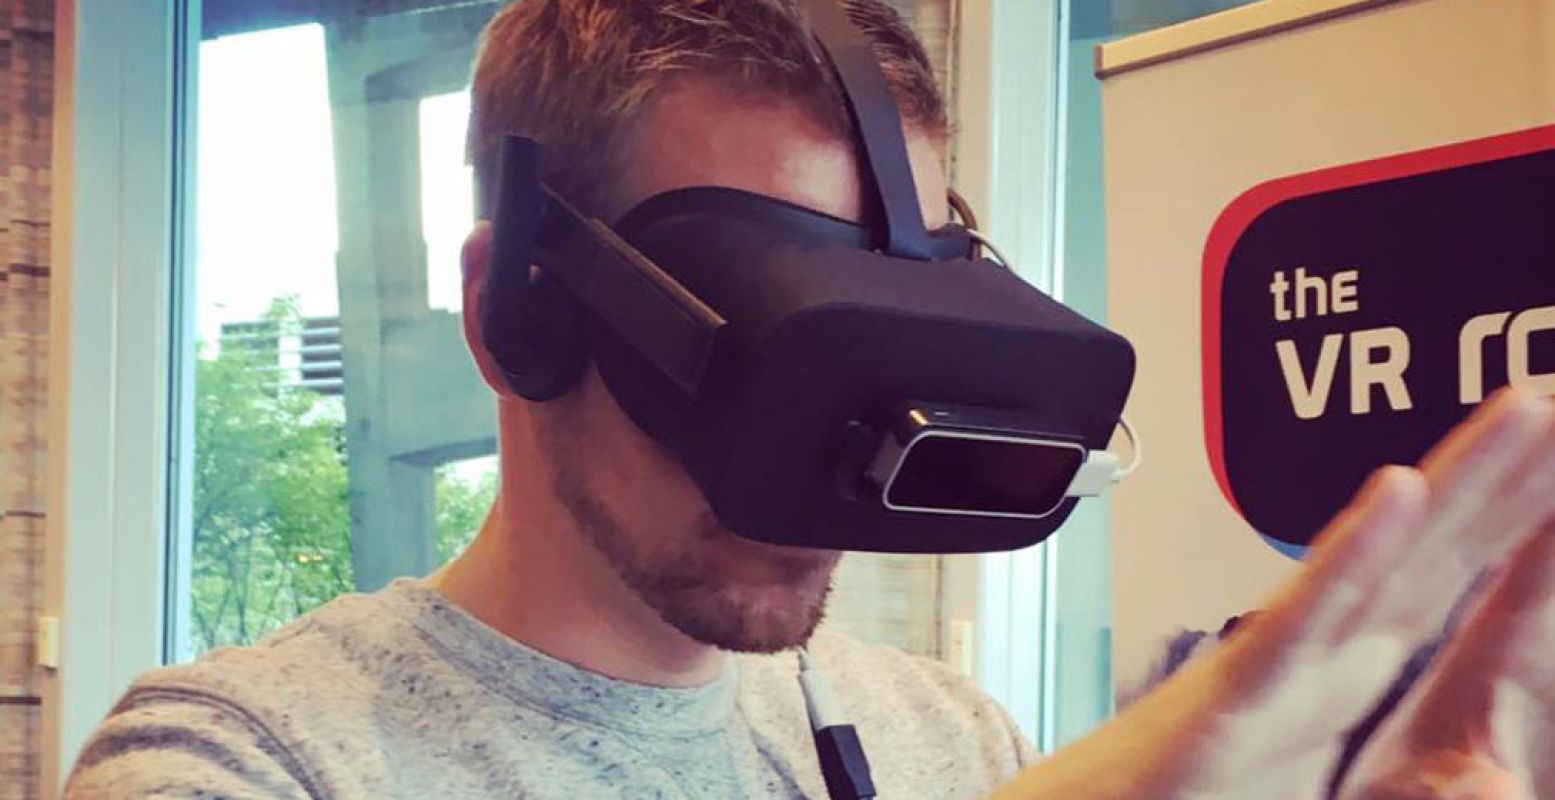 Met een virtualrealitybril op zie je niets meer van de ruimte om je heen, alleen wat er in de bril te zien is. Foto: The VR Room